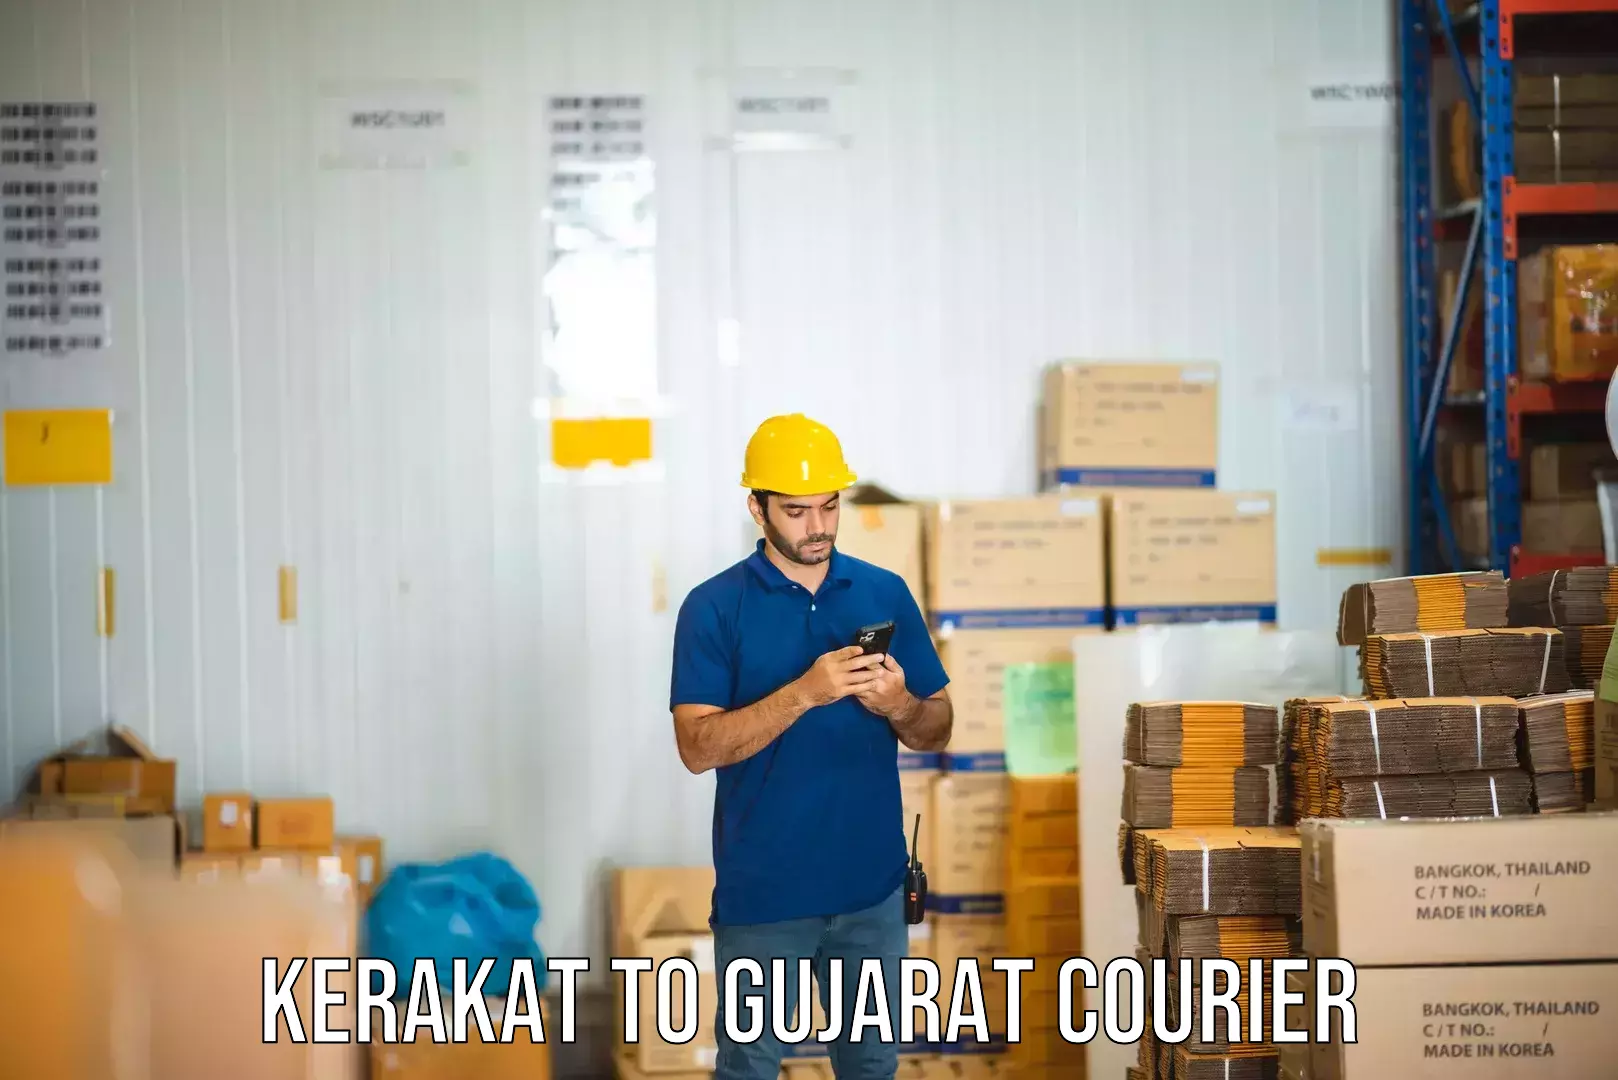 Nationwide shipping capabilities Kerakat to Kachchh